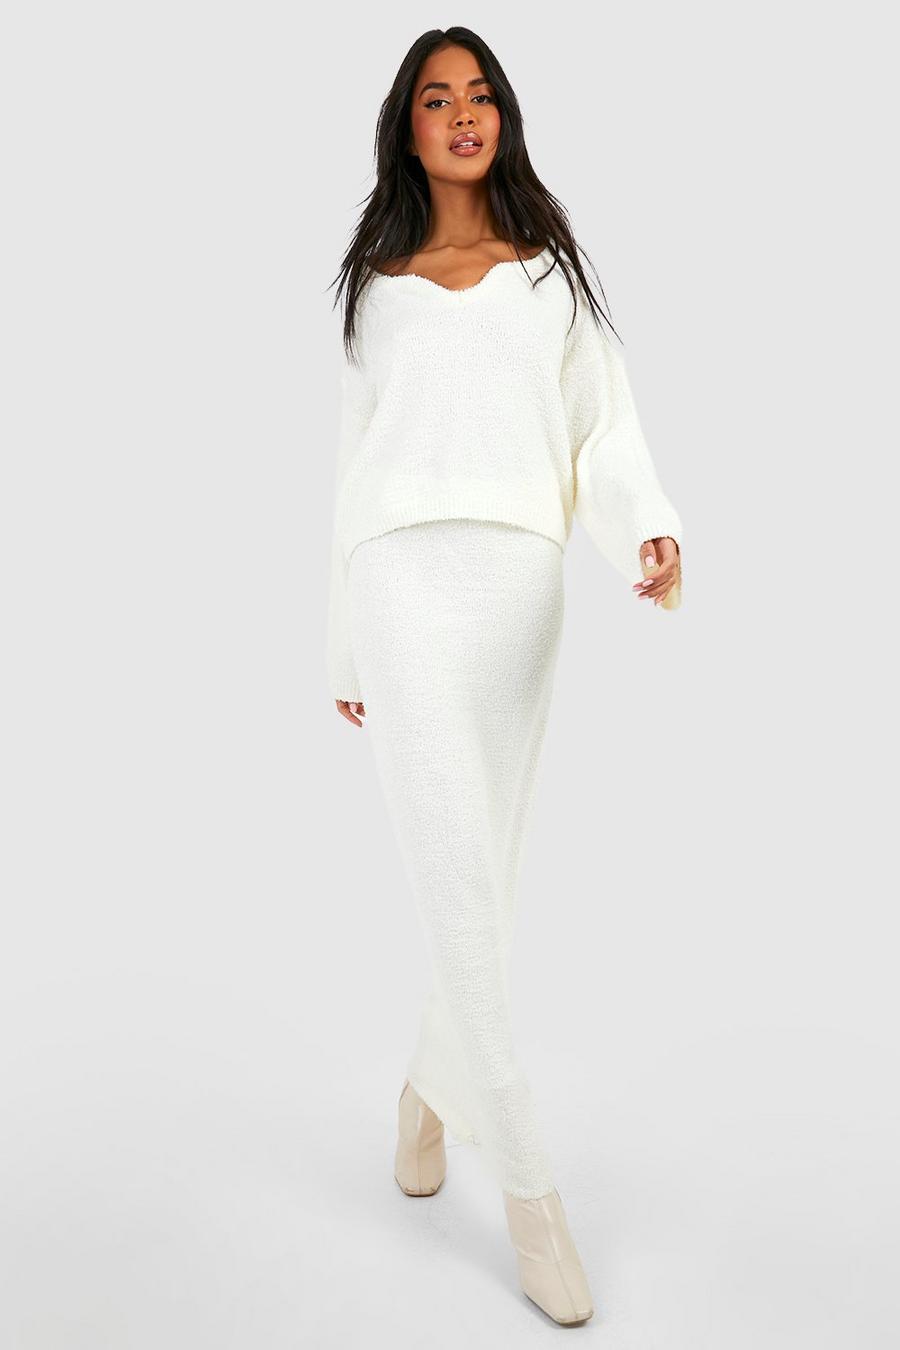 Ensemble premium texturé avec pull à encoche et jupe longue, Ivory blanc